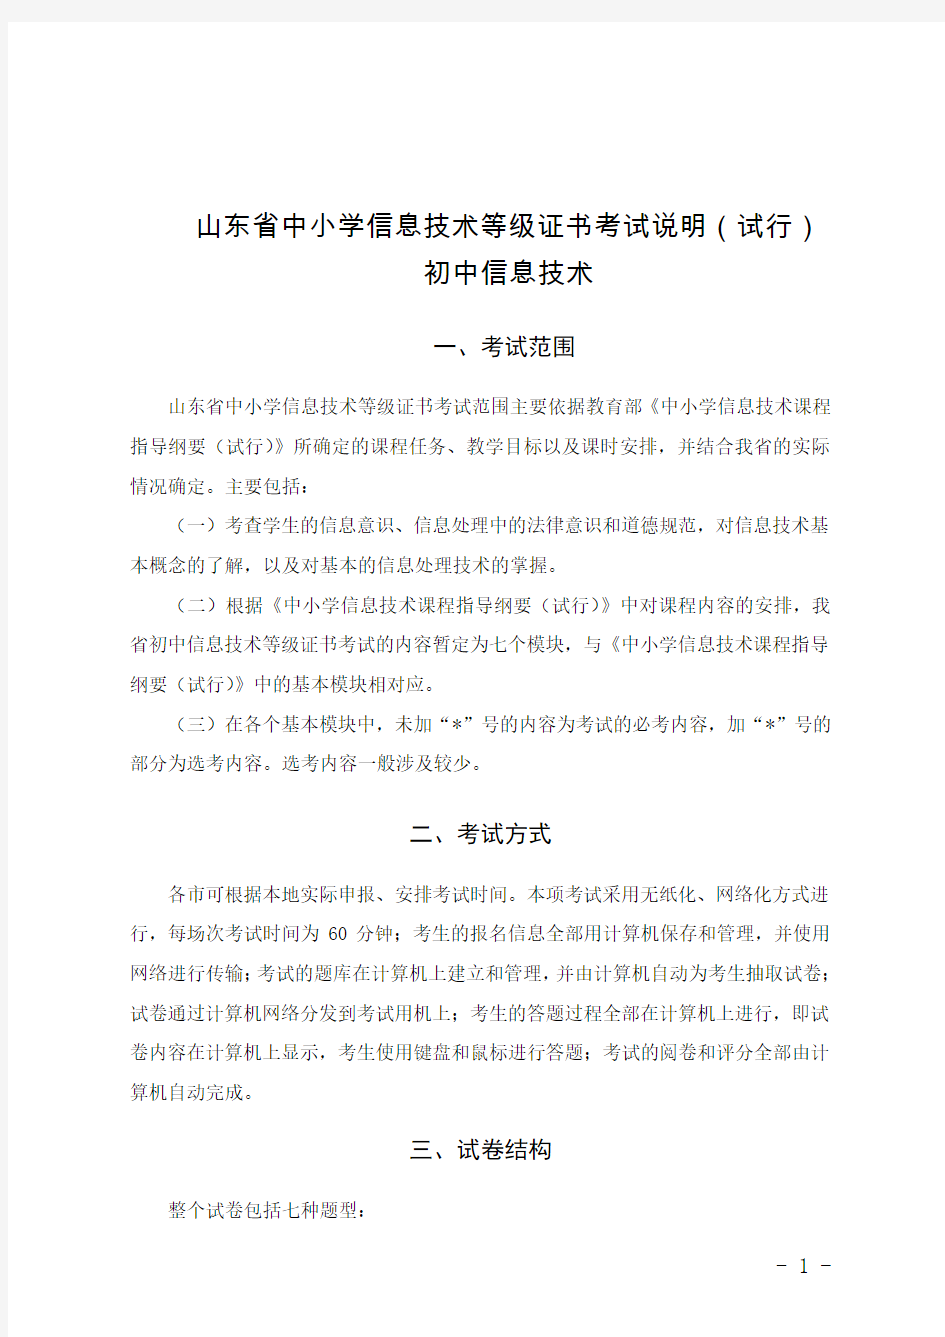 山东省初中信息技术等级证书考试说明(试行)(2015印刷版)